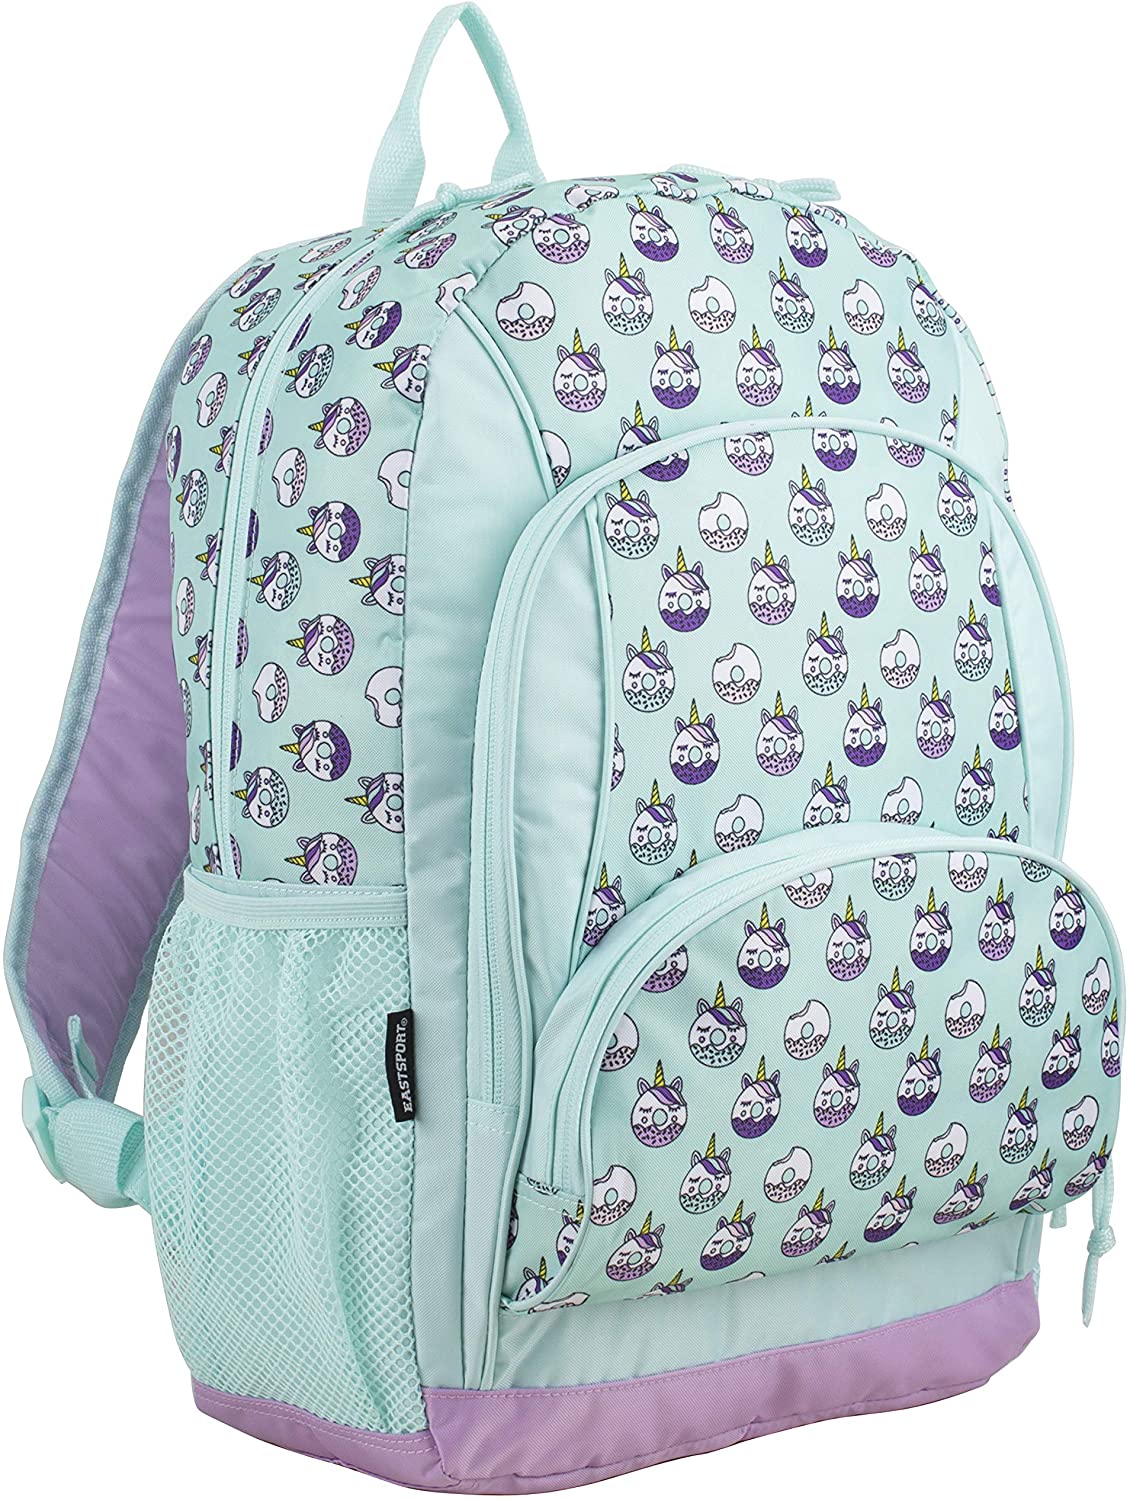 Eastsport Multi Pocket School Backpack For Girls